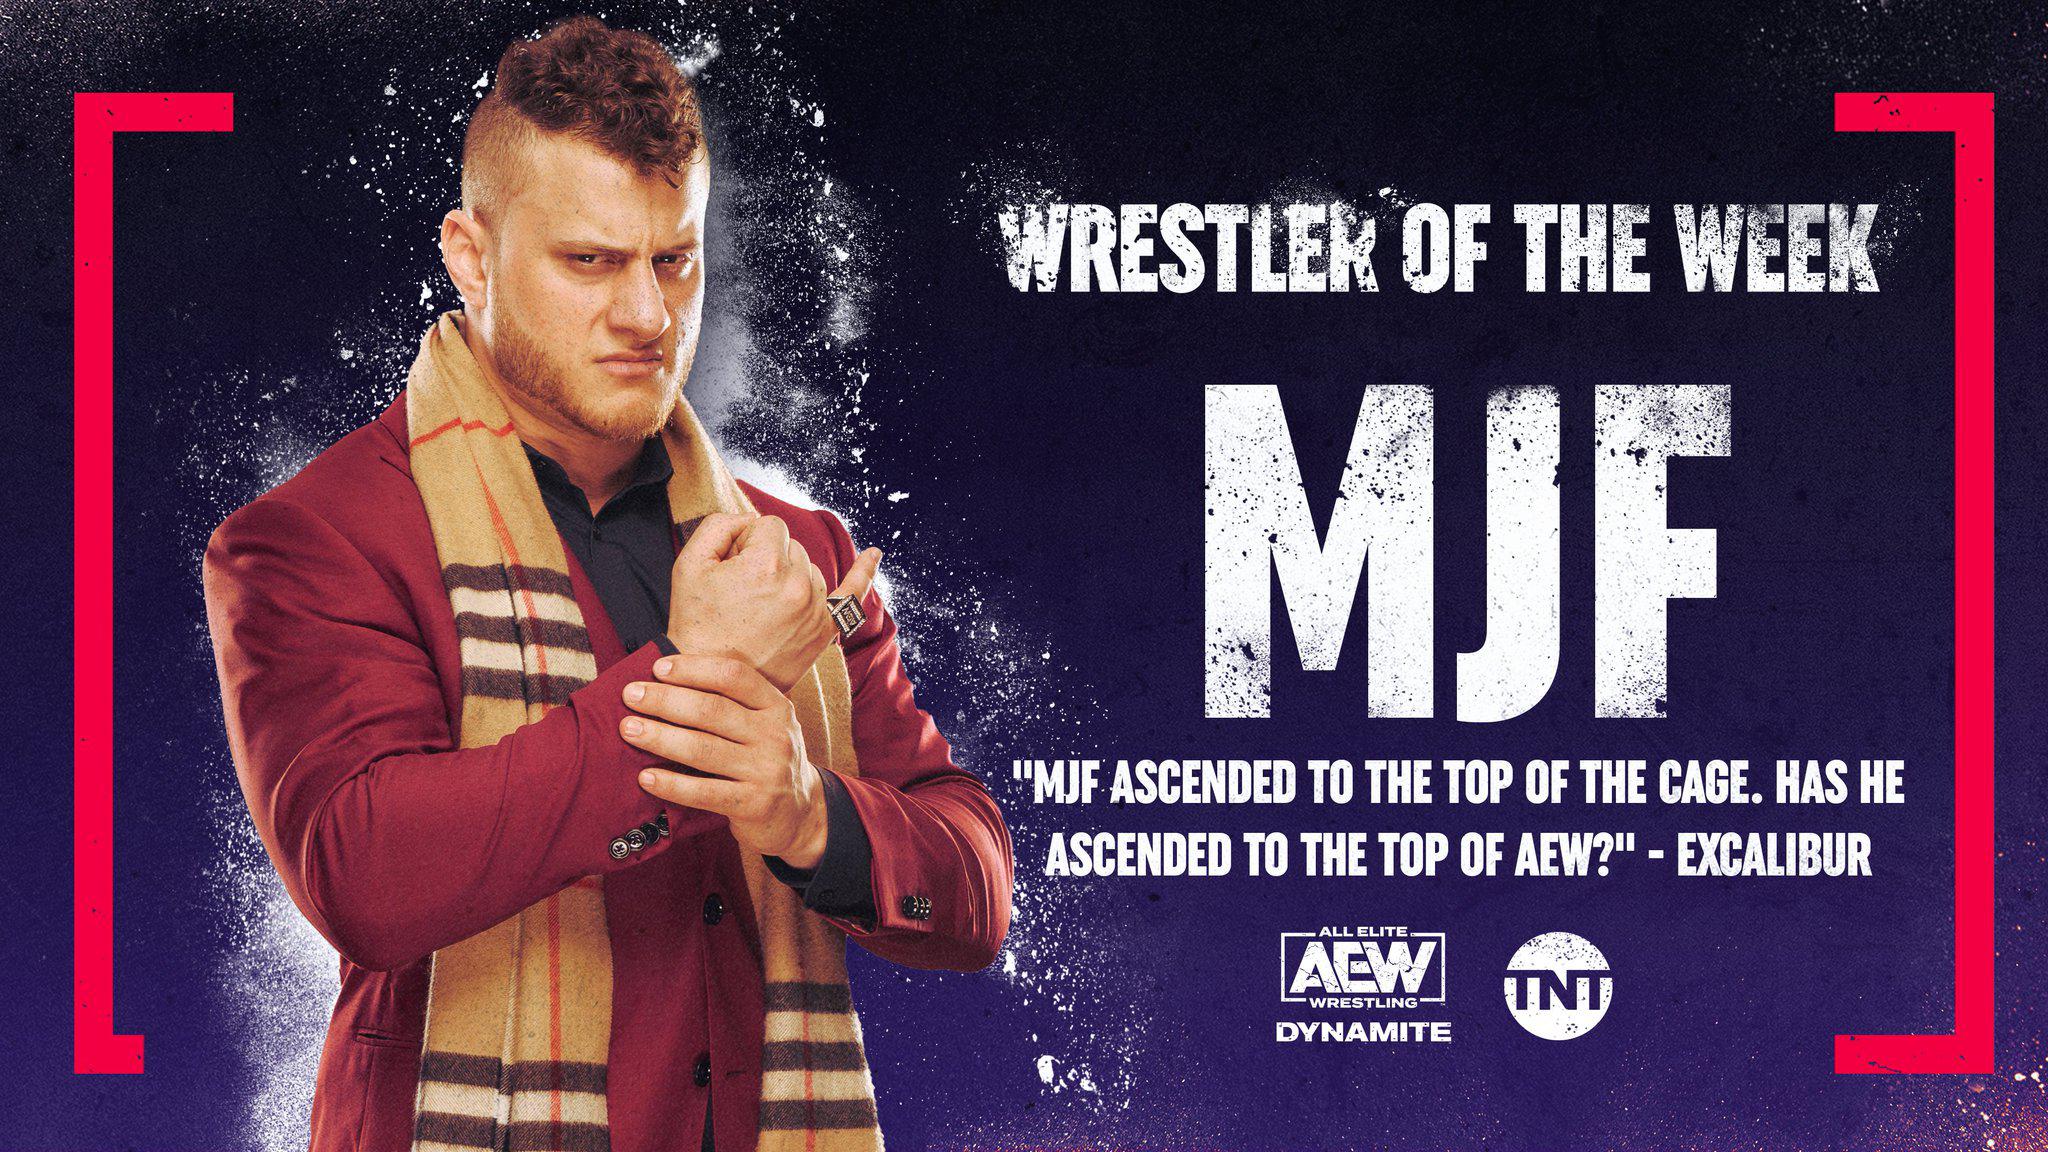 AEW On TNT's Wrestler of the Week: MJF